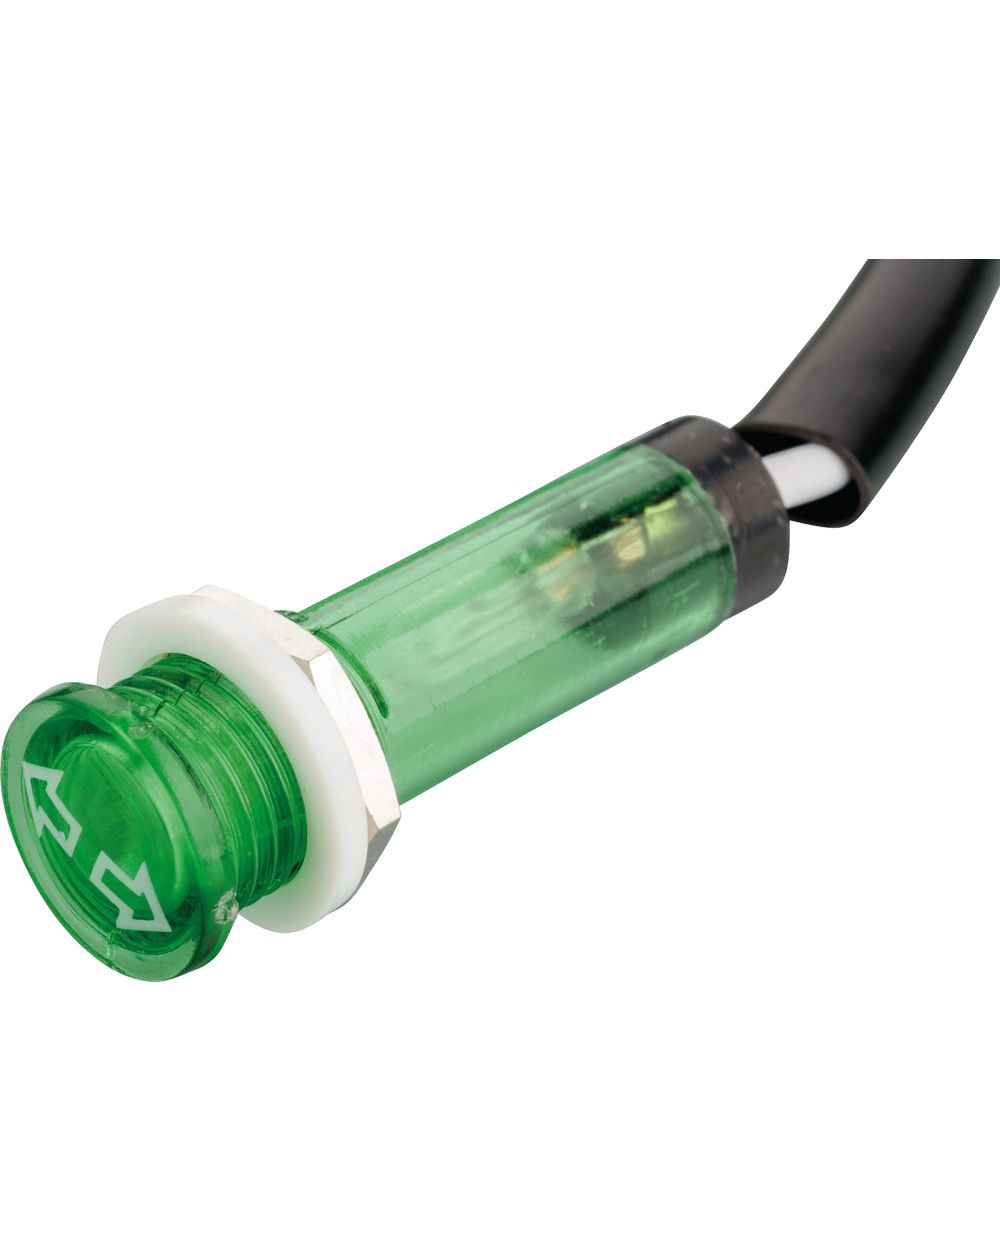 Kontrollleuchte grün, mit Blinkersymbol, 12V, Abm. ca. 12x35mm, für  10mm-Bohrung, Materialstärke ca. 1-6mm, Schraubbefestigung